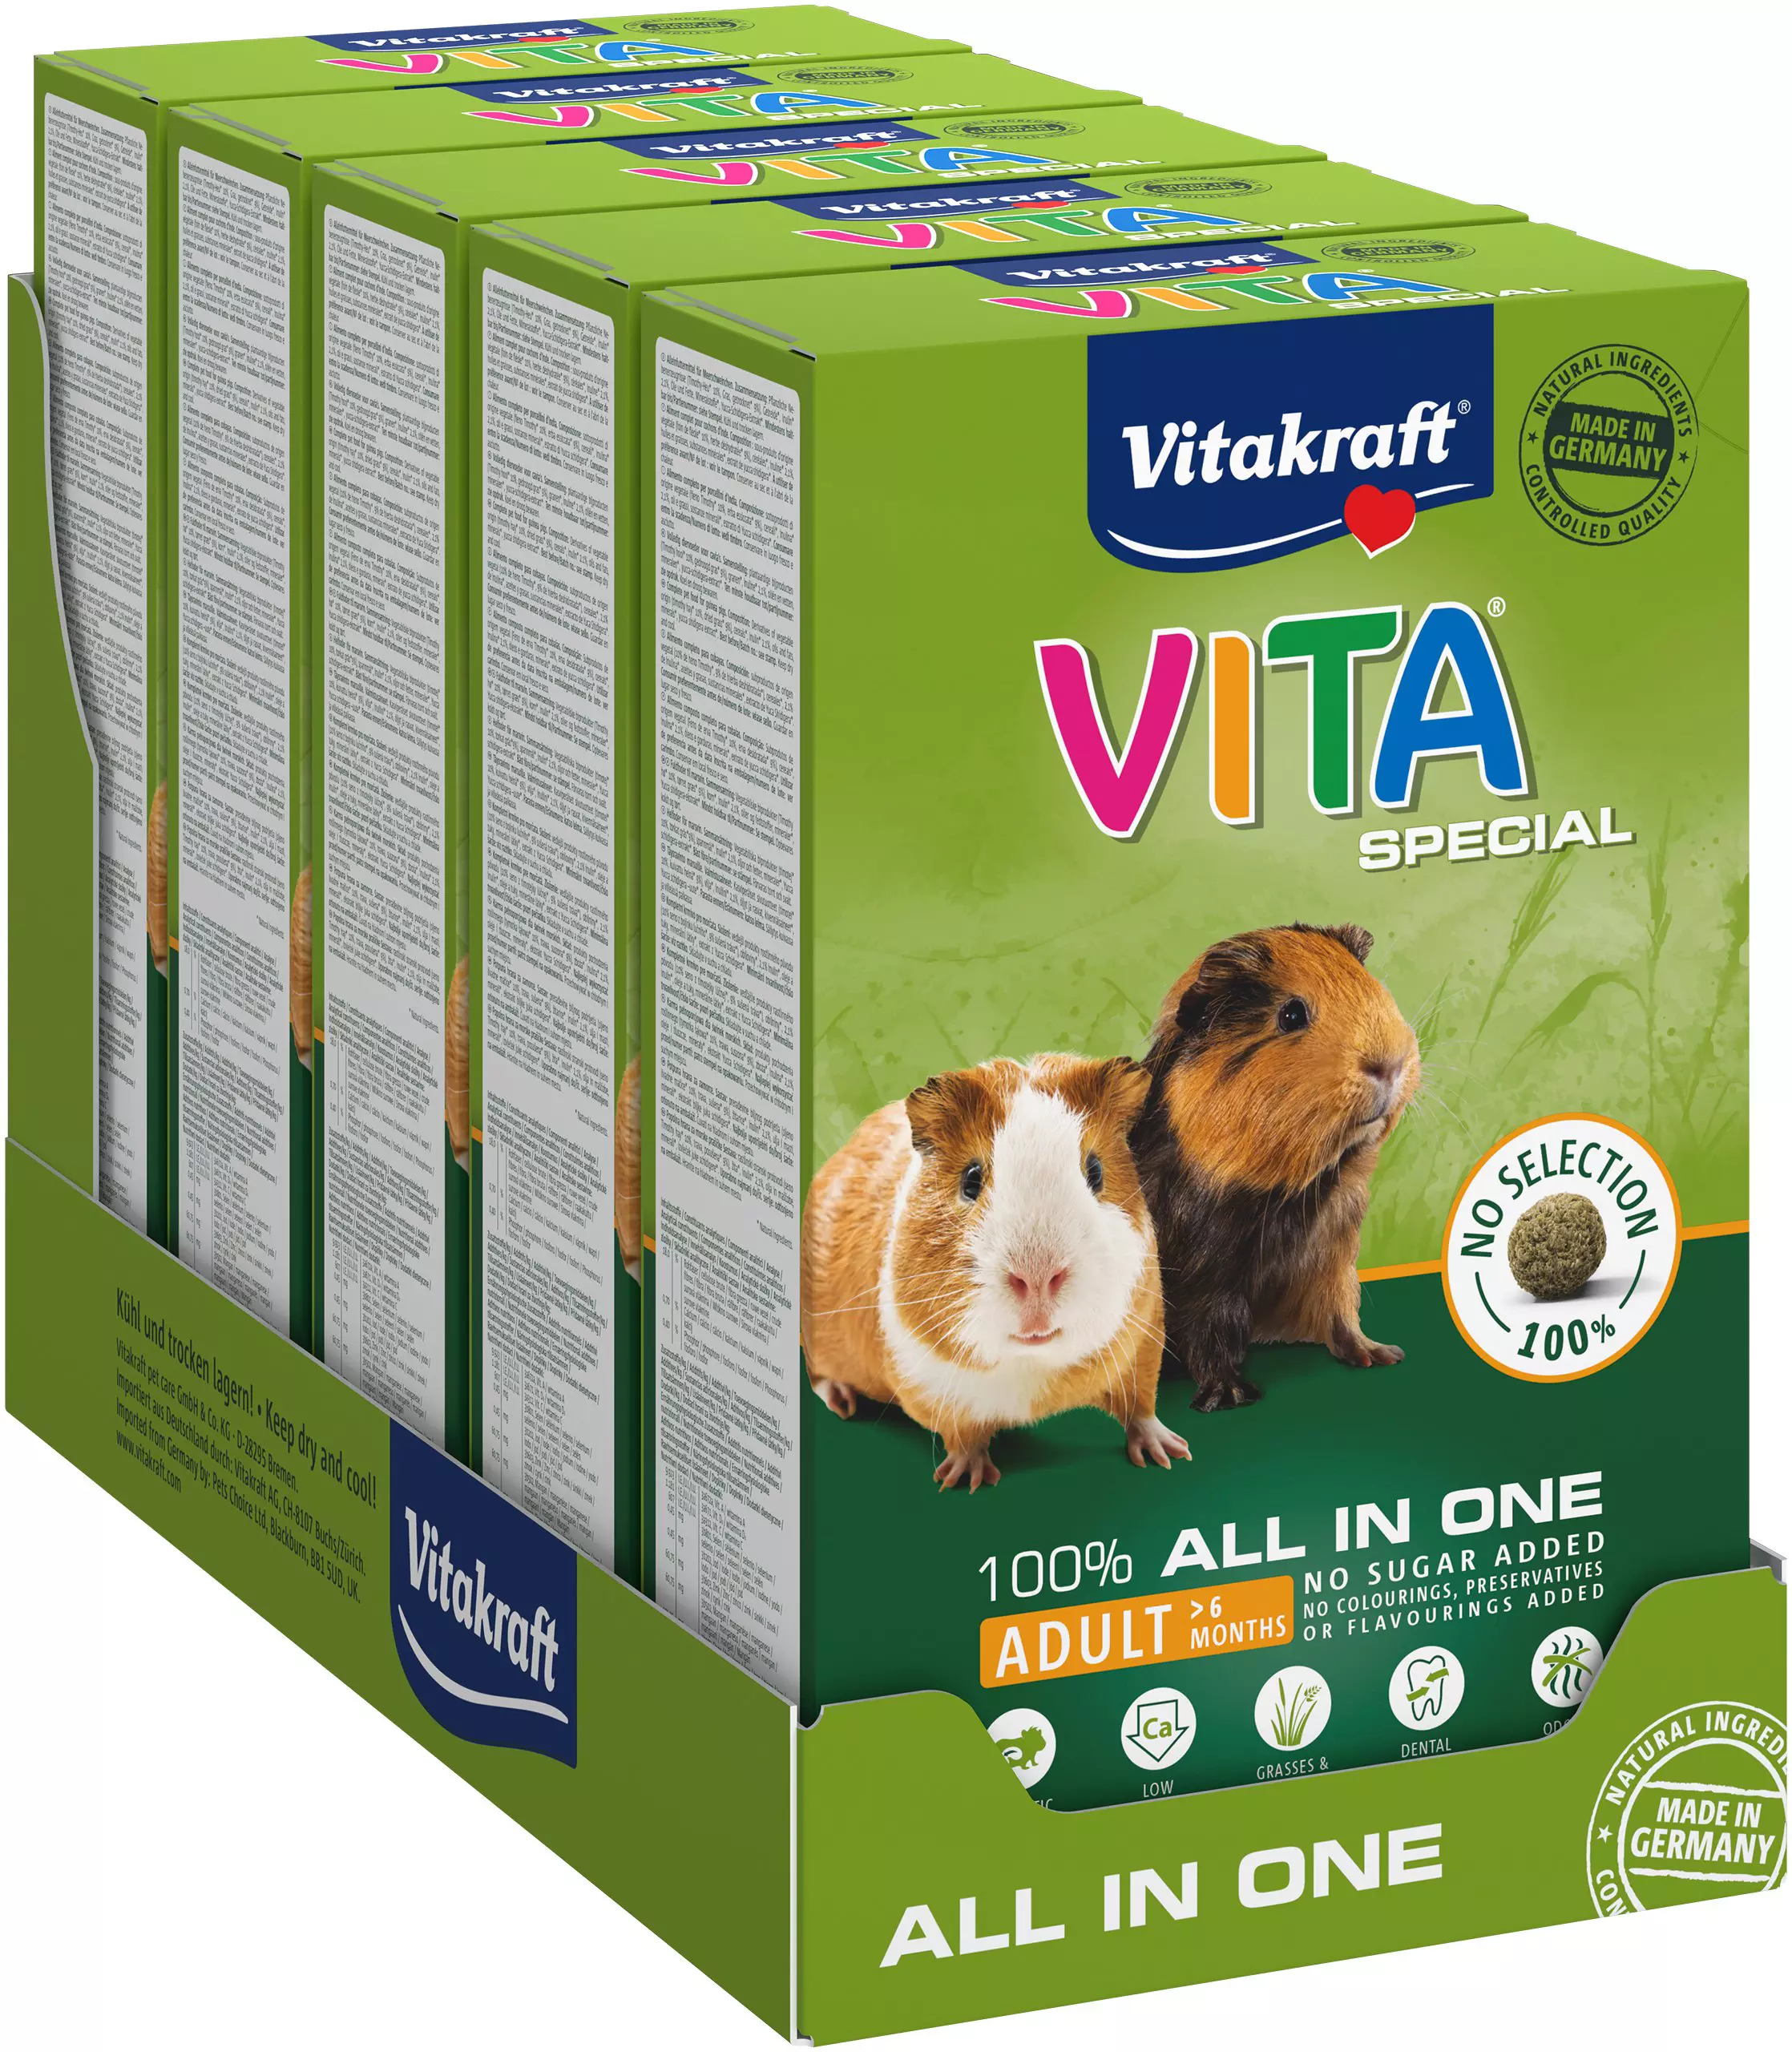 Vitakraft Vita Special Adult Guinea Pigs